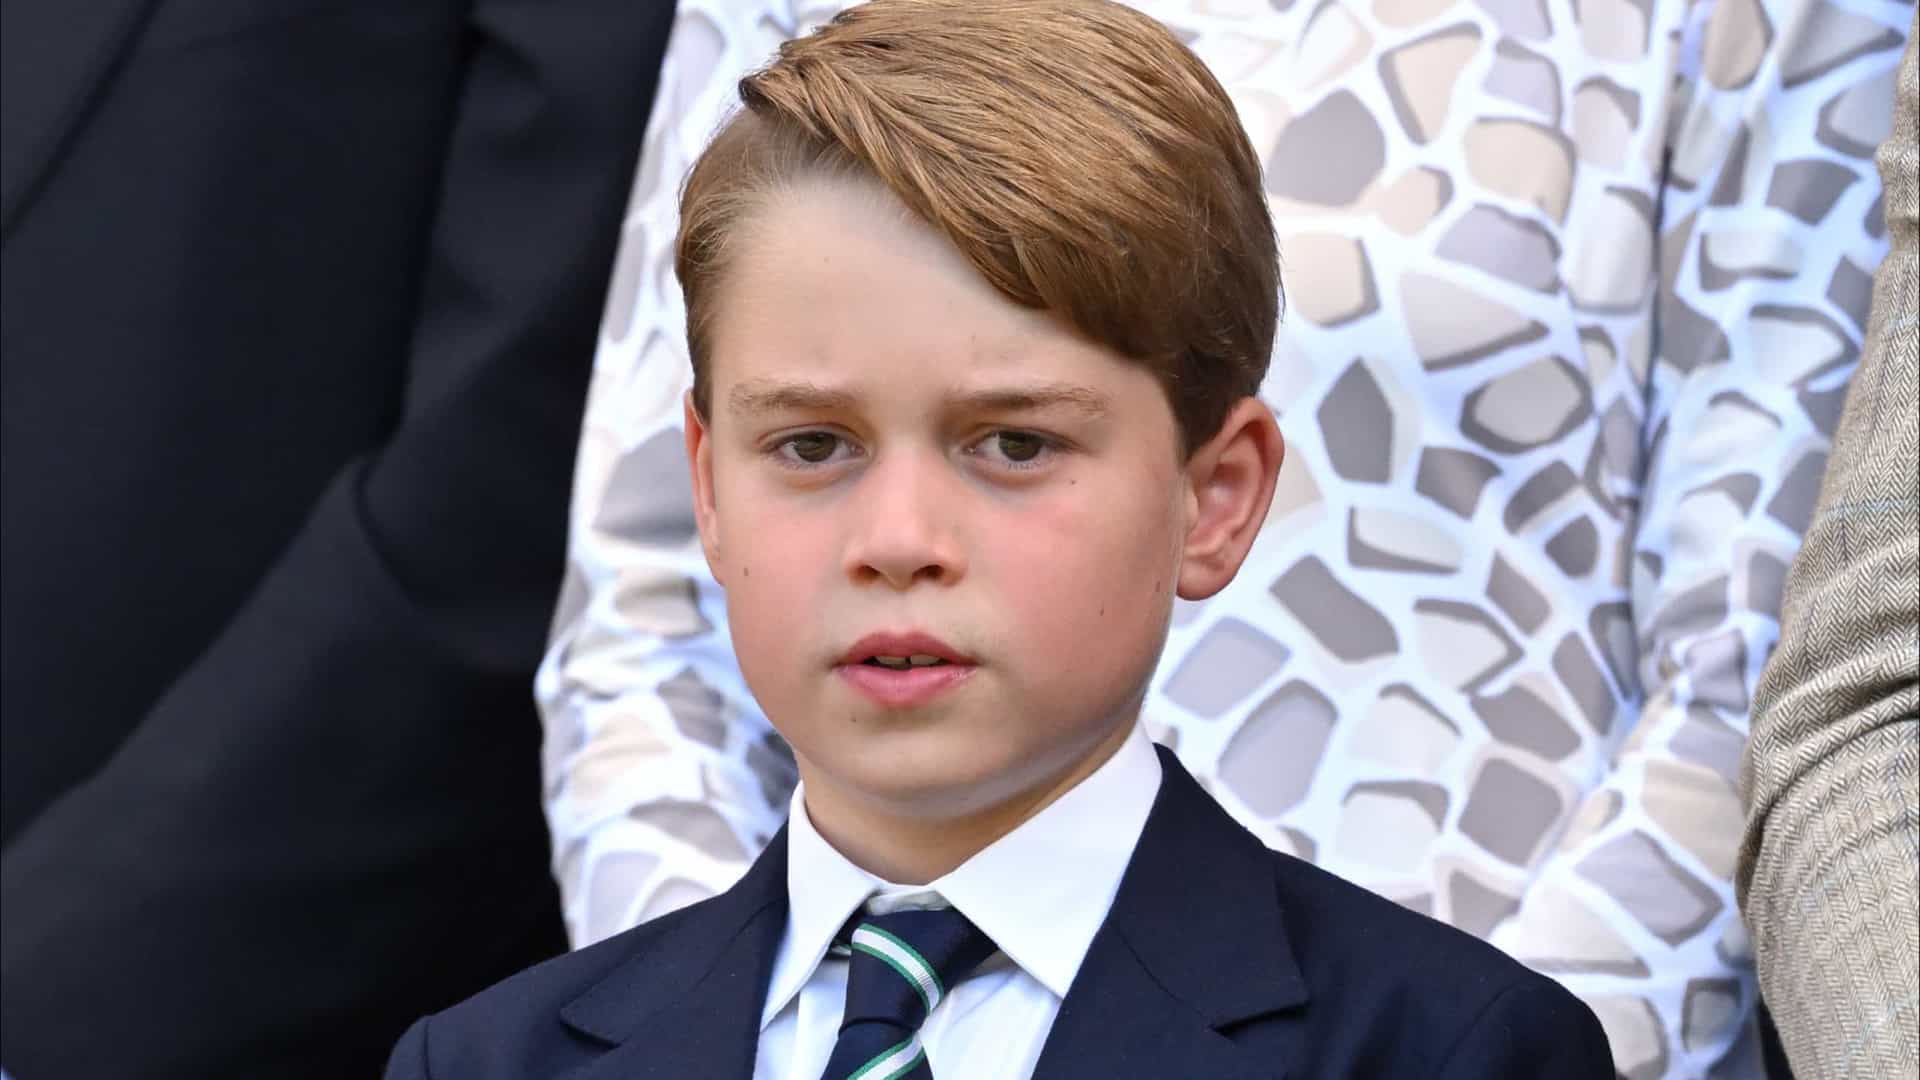 revistapazes.com - 'Meu pai será rei, então é melhor vocês tomarem cuidado', diz príncipe George aos colegas de classe